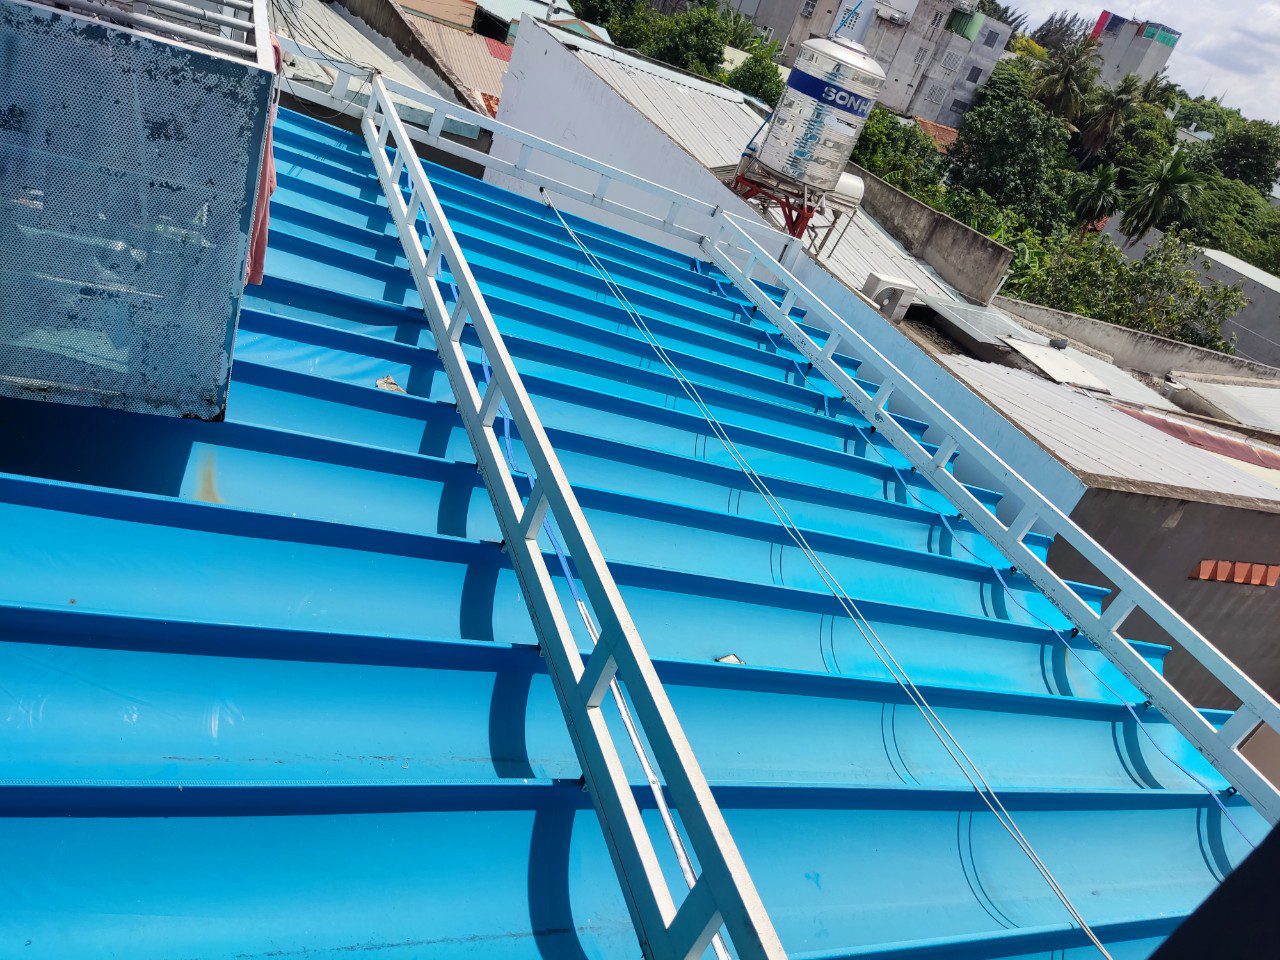 dịch vụ làm mái tôn TPHCM - làm mái tôn tại quận Thanh Xuân - thi công mái tôn nhà xưởng tại Sóng Thần - thi công mái tôn nhà xưởng tại quận 7 - dịch vụ làm mái tôn giá rẻ tại quận Tân Bình - 0368115251